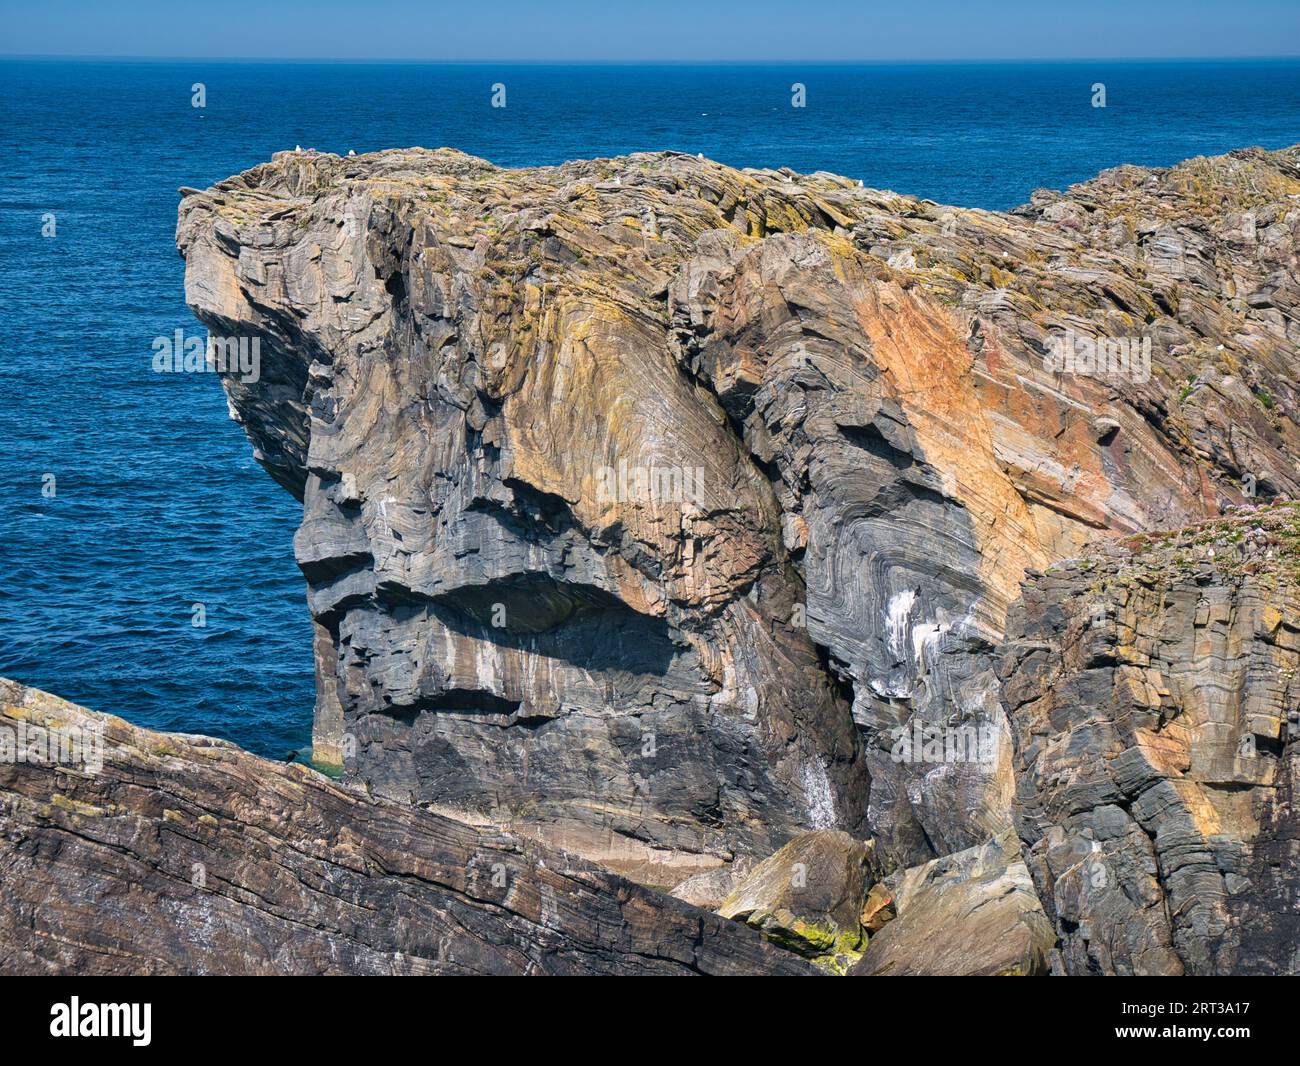 Strati rocciosi esposti nelle scogliere costiere sulla costa rocciosa e aspra dell'Atlantico dell'Isola di Lewis nelle Ebridi esterne, Scozia, Regno Unito. Preso da un sole Foto Stock